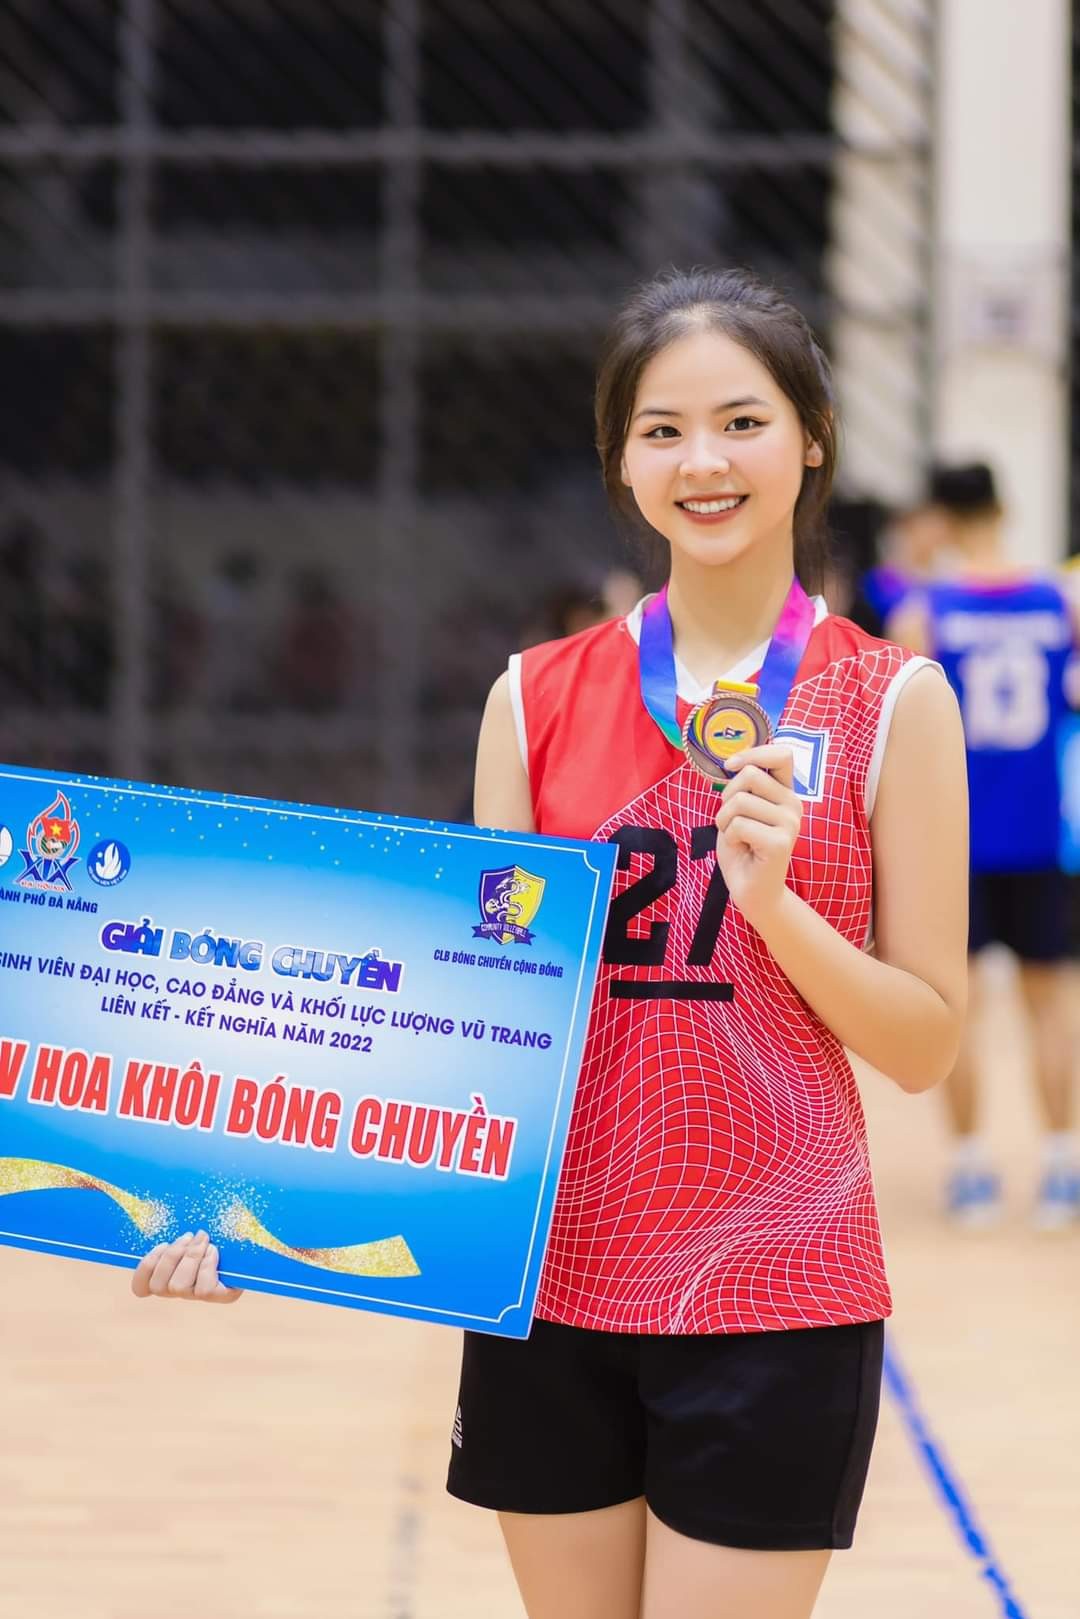 Mặc dù không trưởng thành từ các CLB bóng chuyền chuyên nghiệp, nhưng cái tên Ngân Hà đã vang danh tại Đà Nẵng không chỉ là tài năng mà còn vì nhan sắc xinh đẹp, trong trẻo. (Ảnh: FBNV)